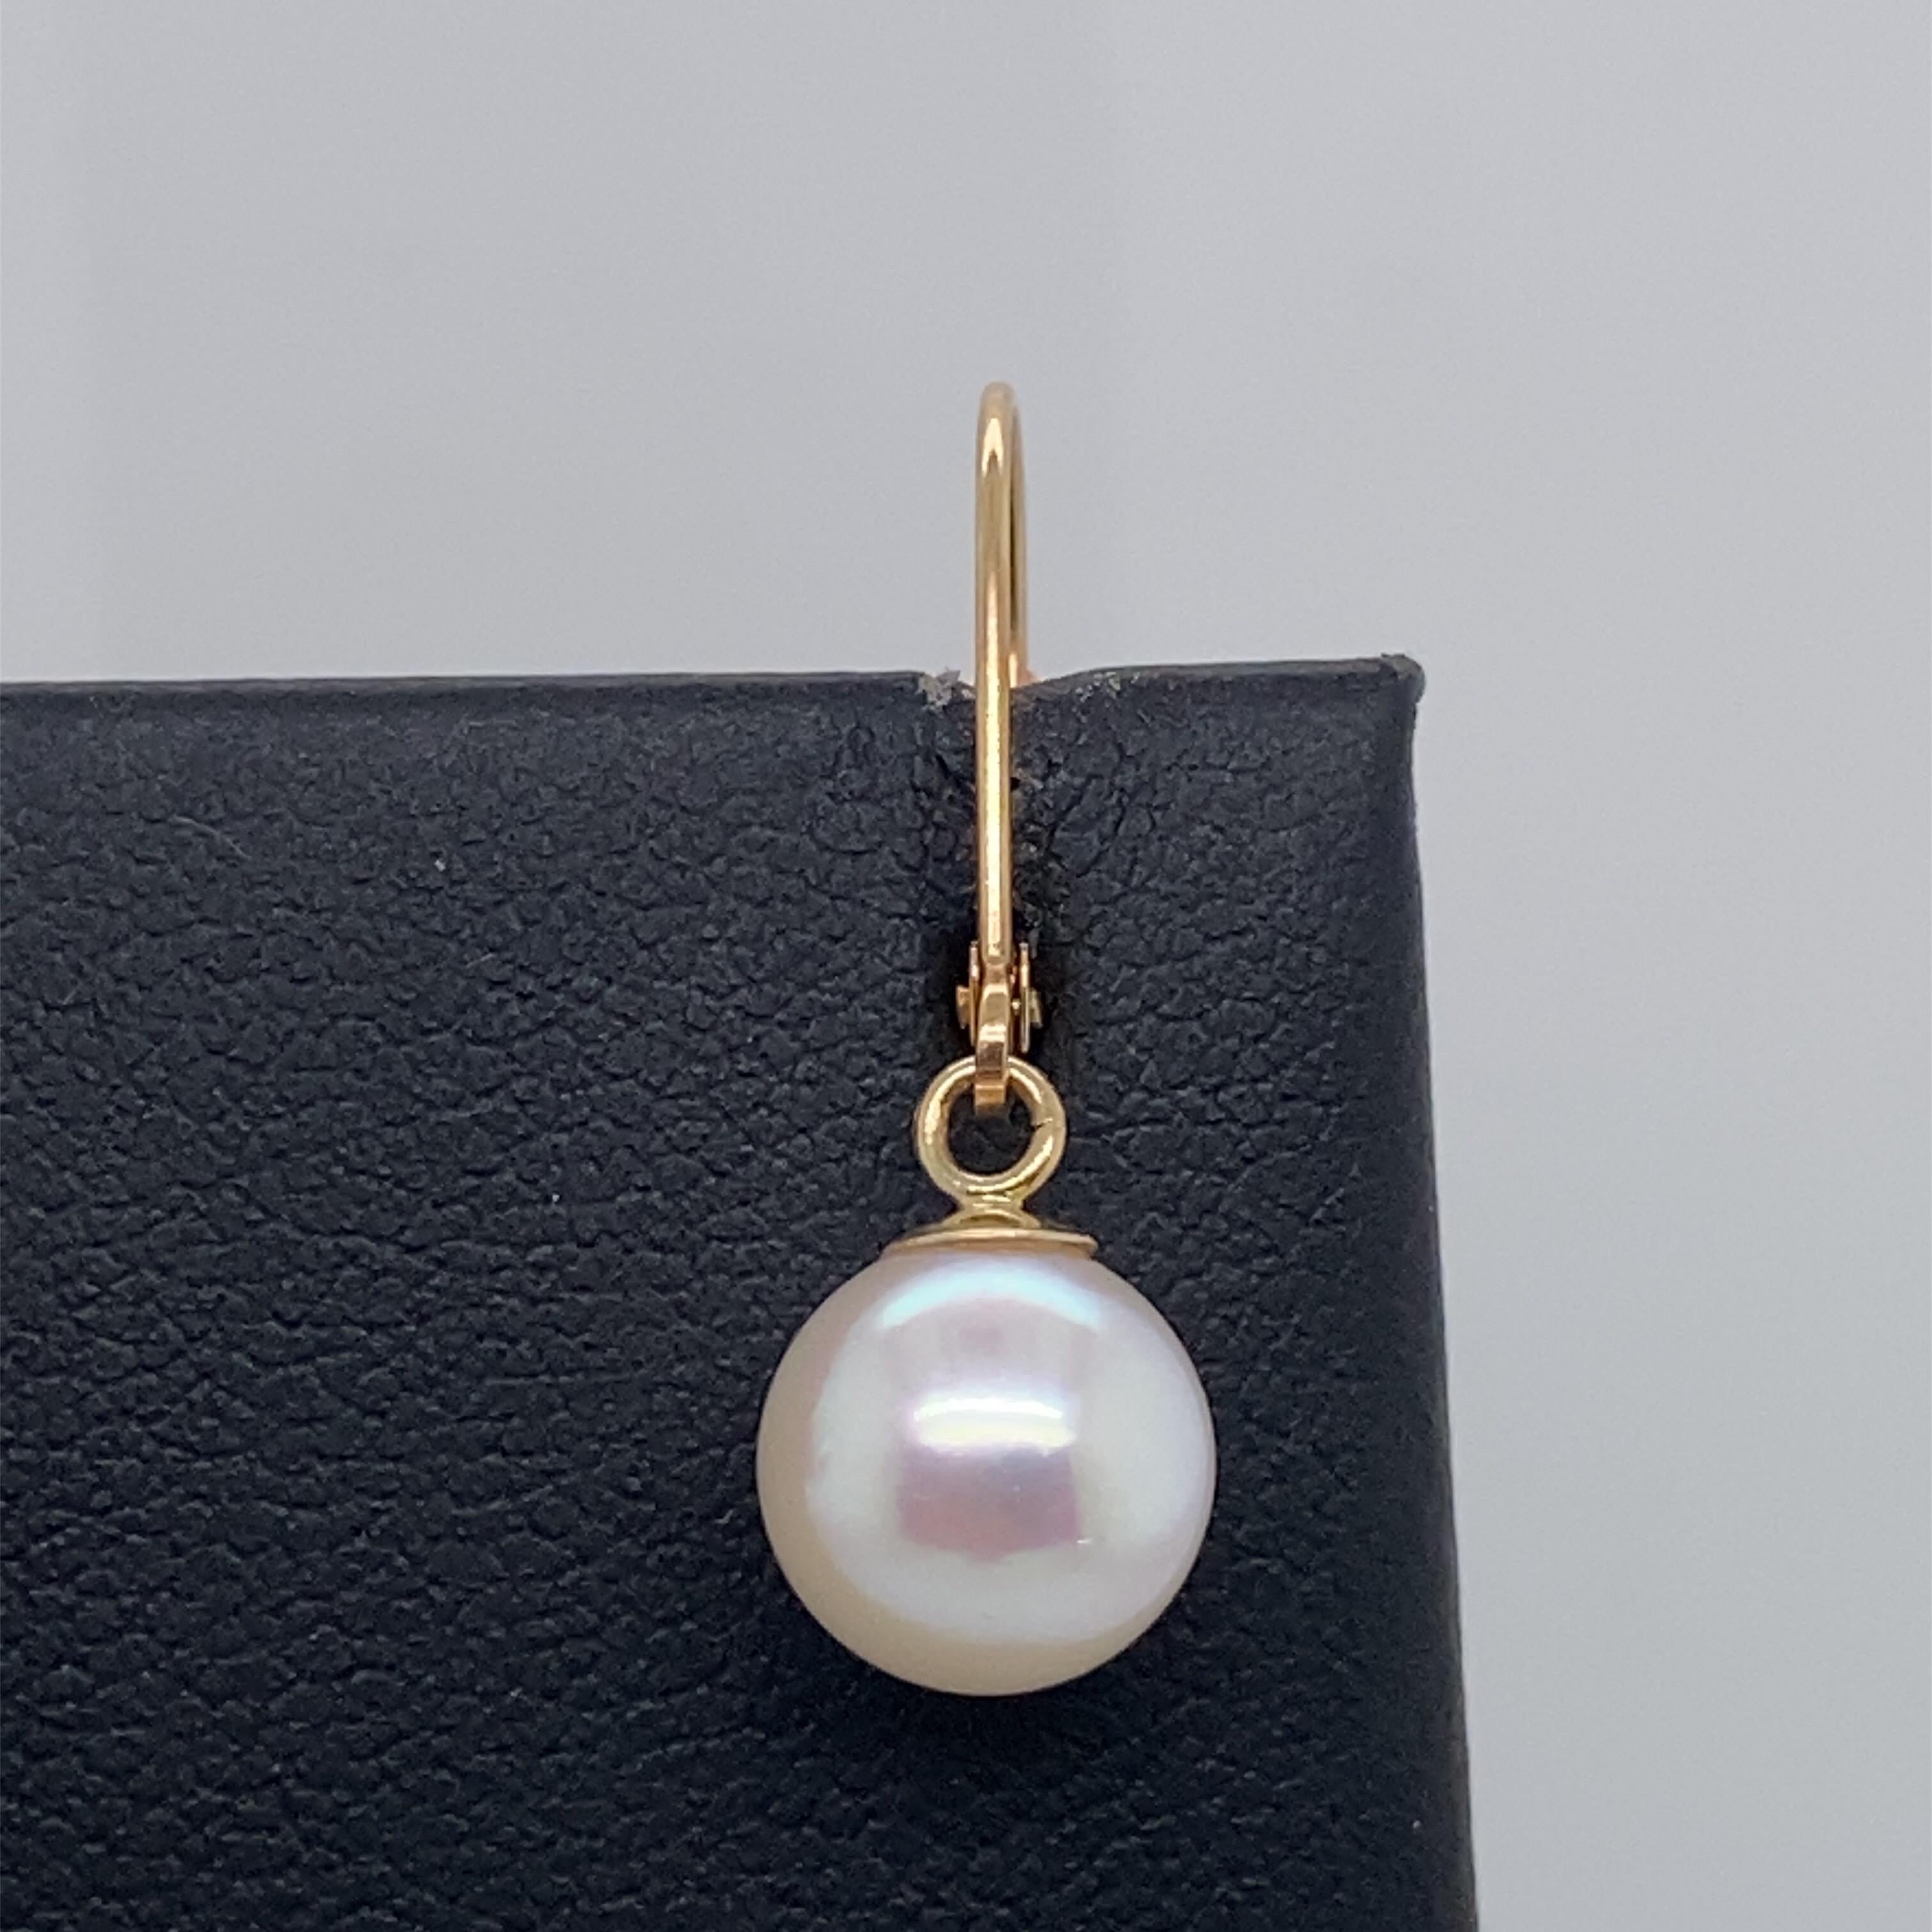 Une jolie paire de perles blanches d'eau douce mesurant 8,5-9 mm, façonnée en or jaune 14k.
Également disponible en or blanc 